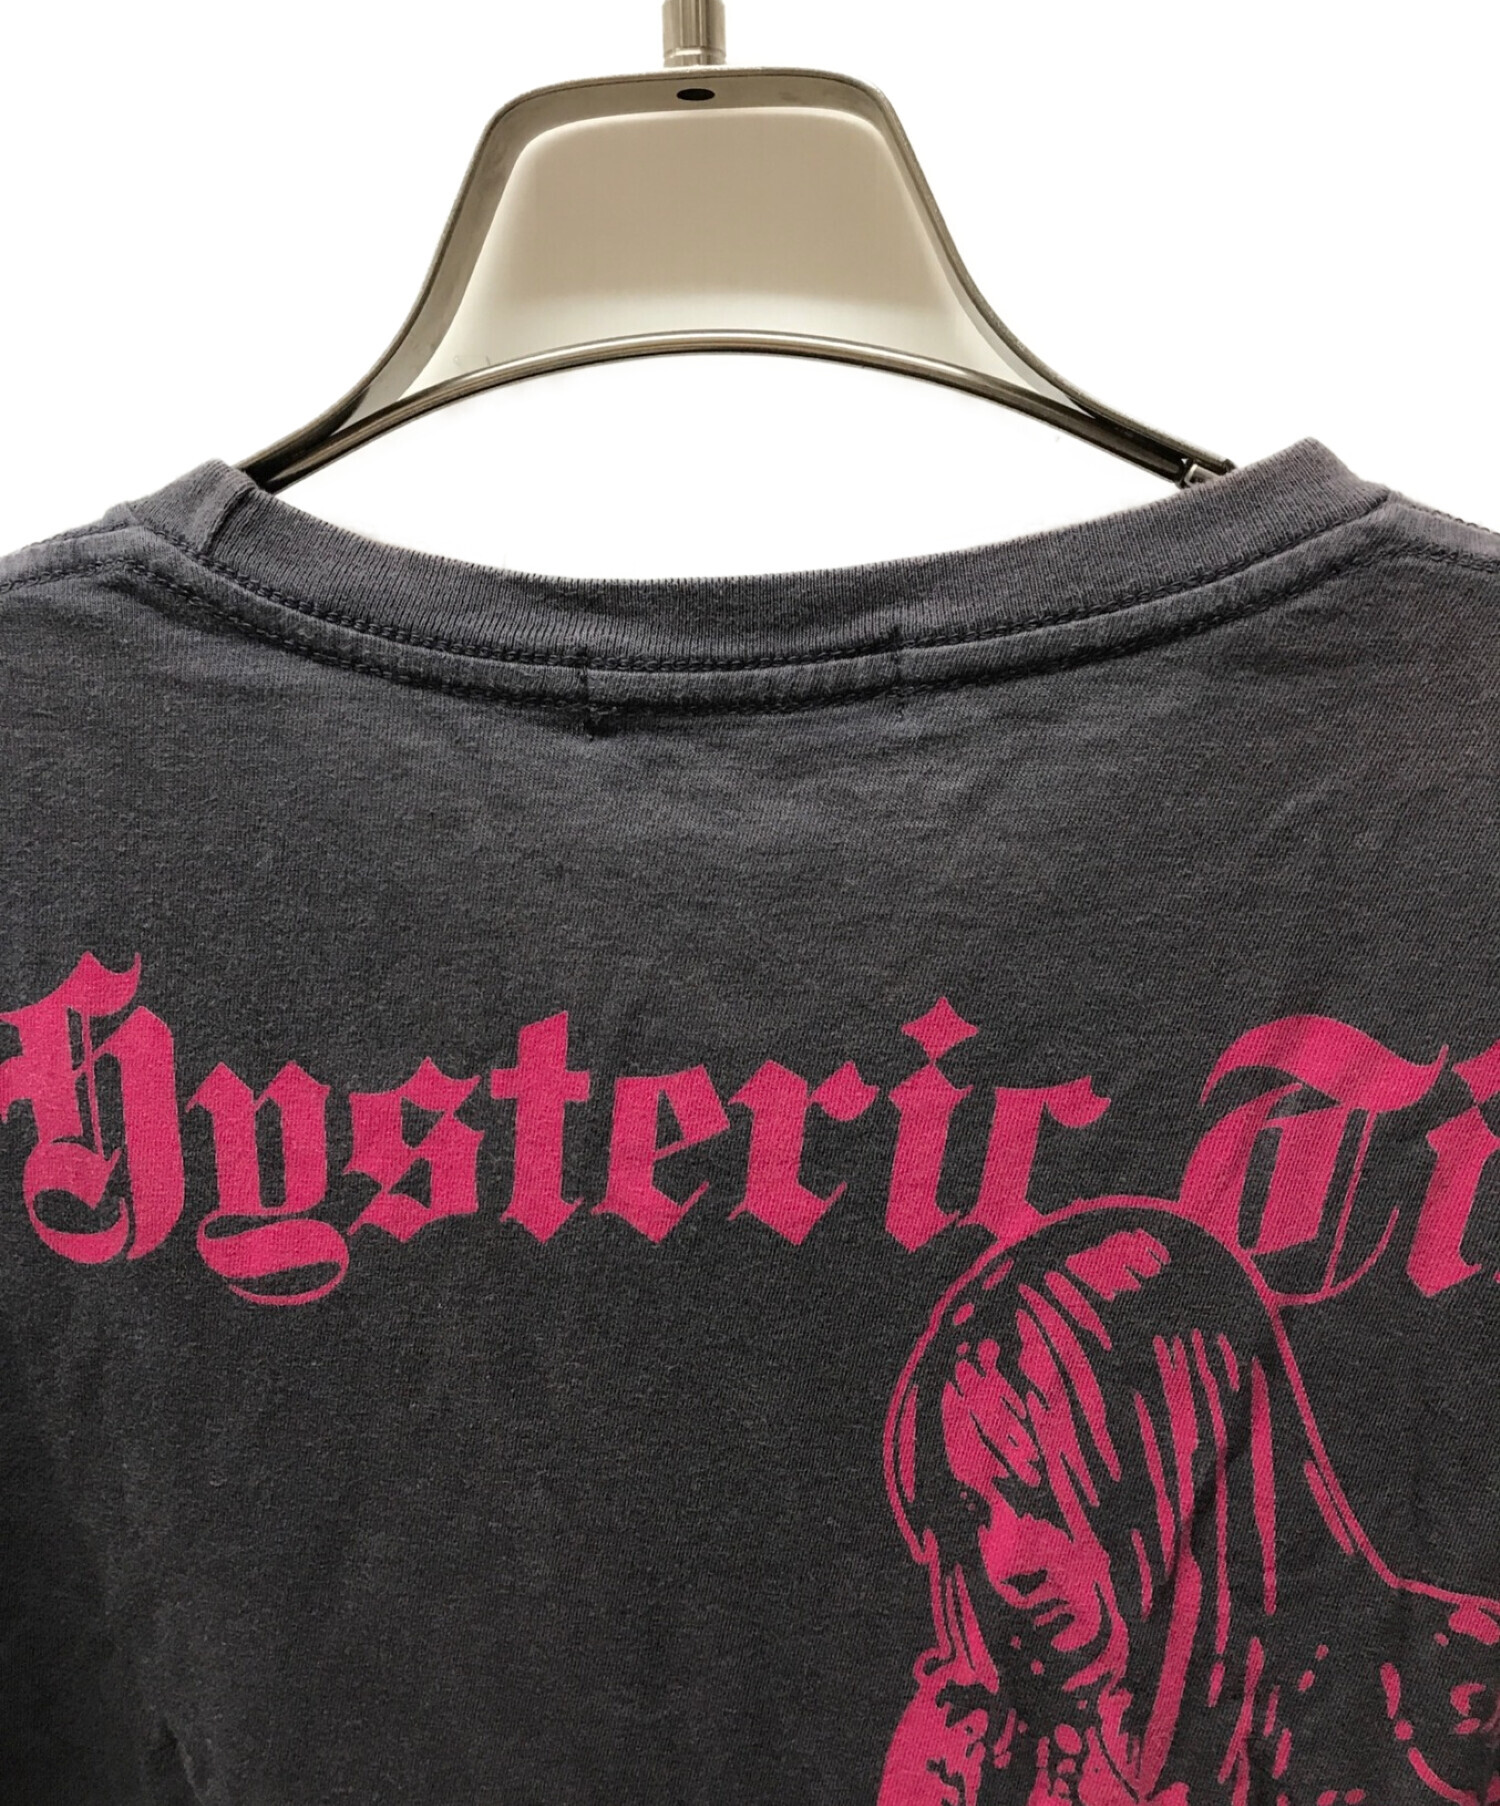 Hysteric Glamour (ヒステリックグラマー) プリントＴシャツ ガール Tシャツ0212CT28 グレー サイズ:S